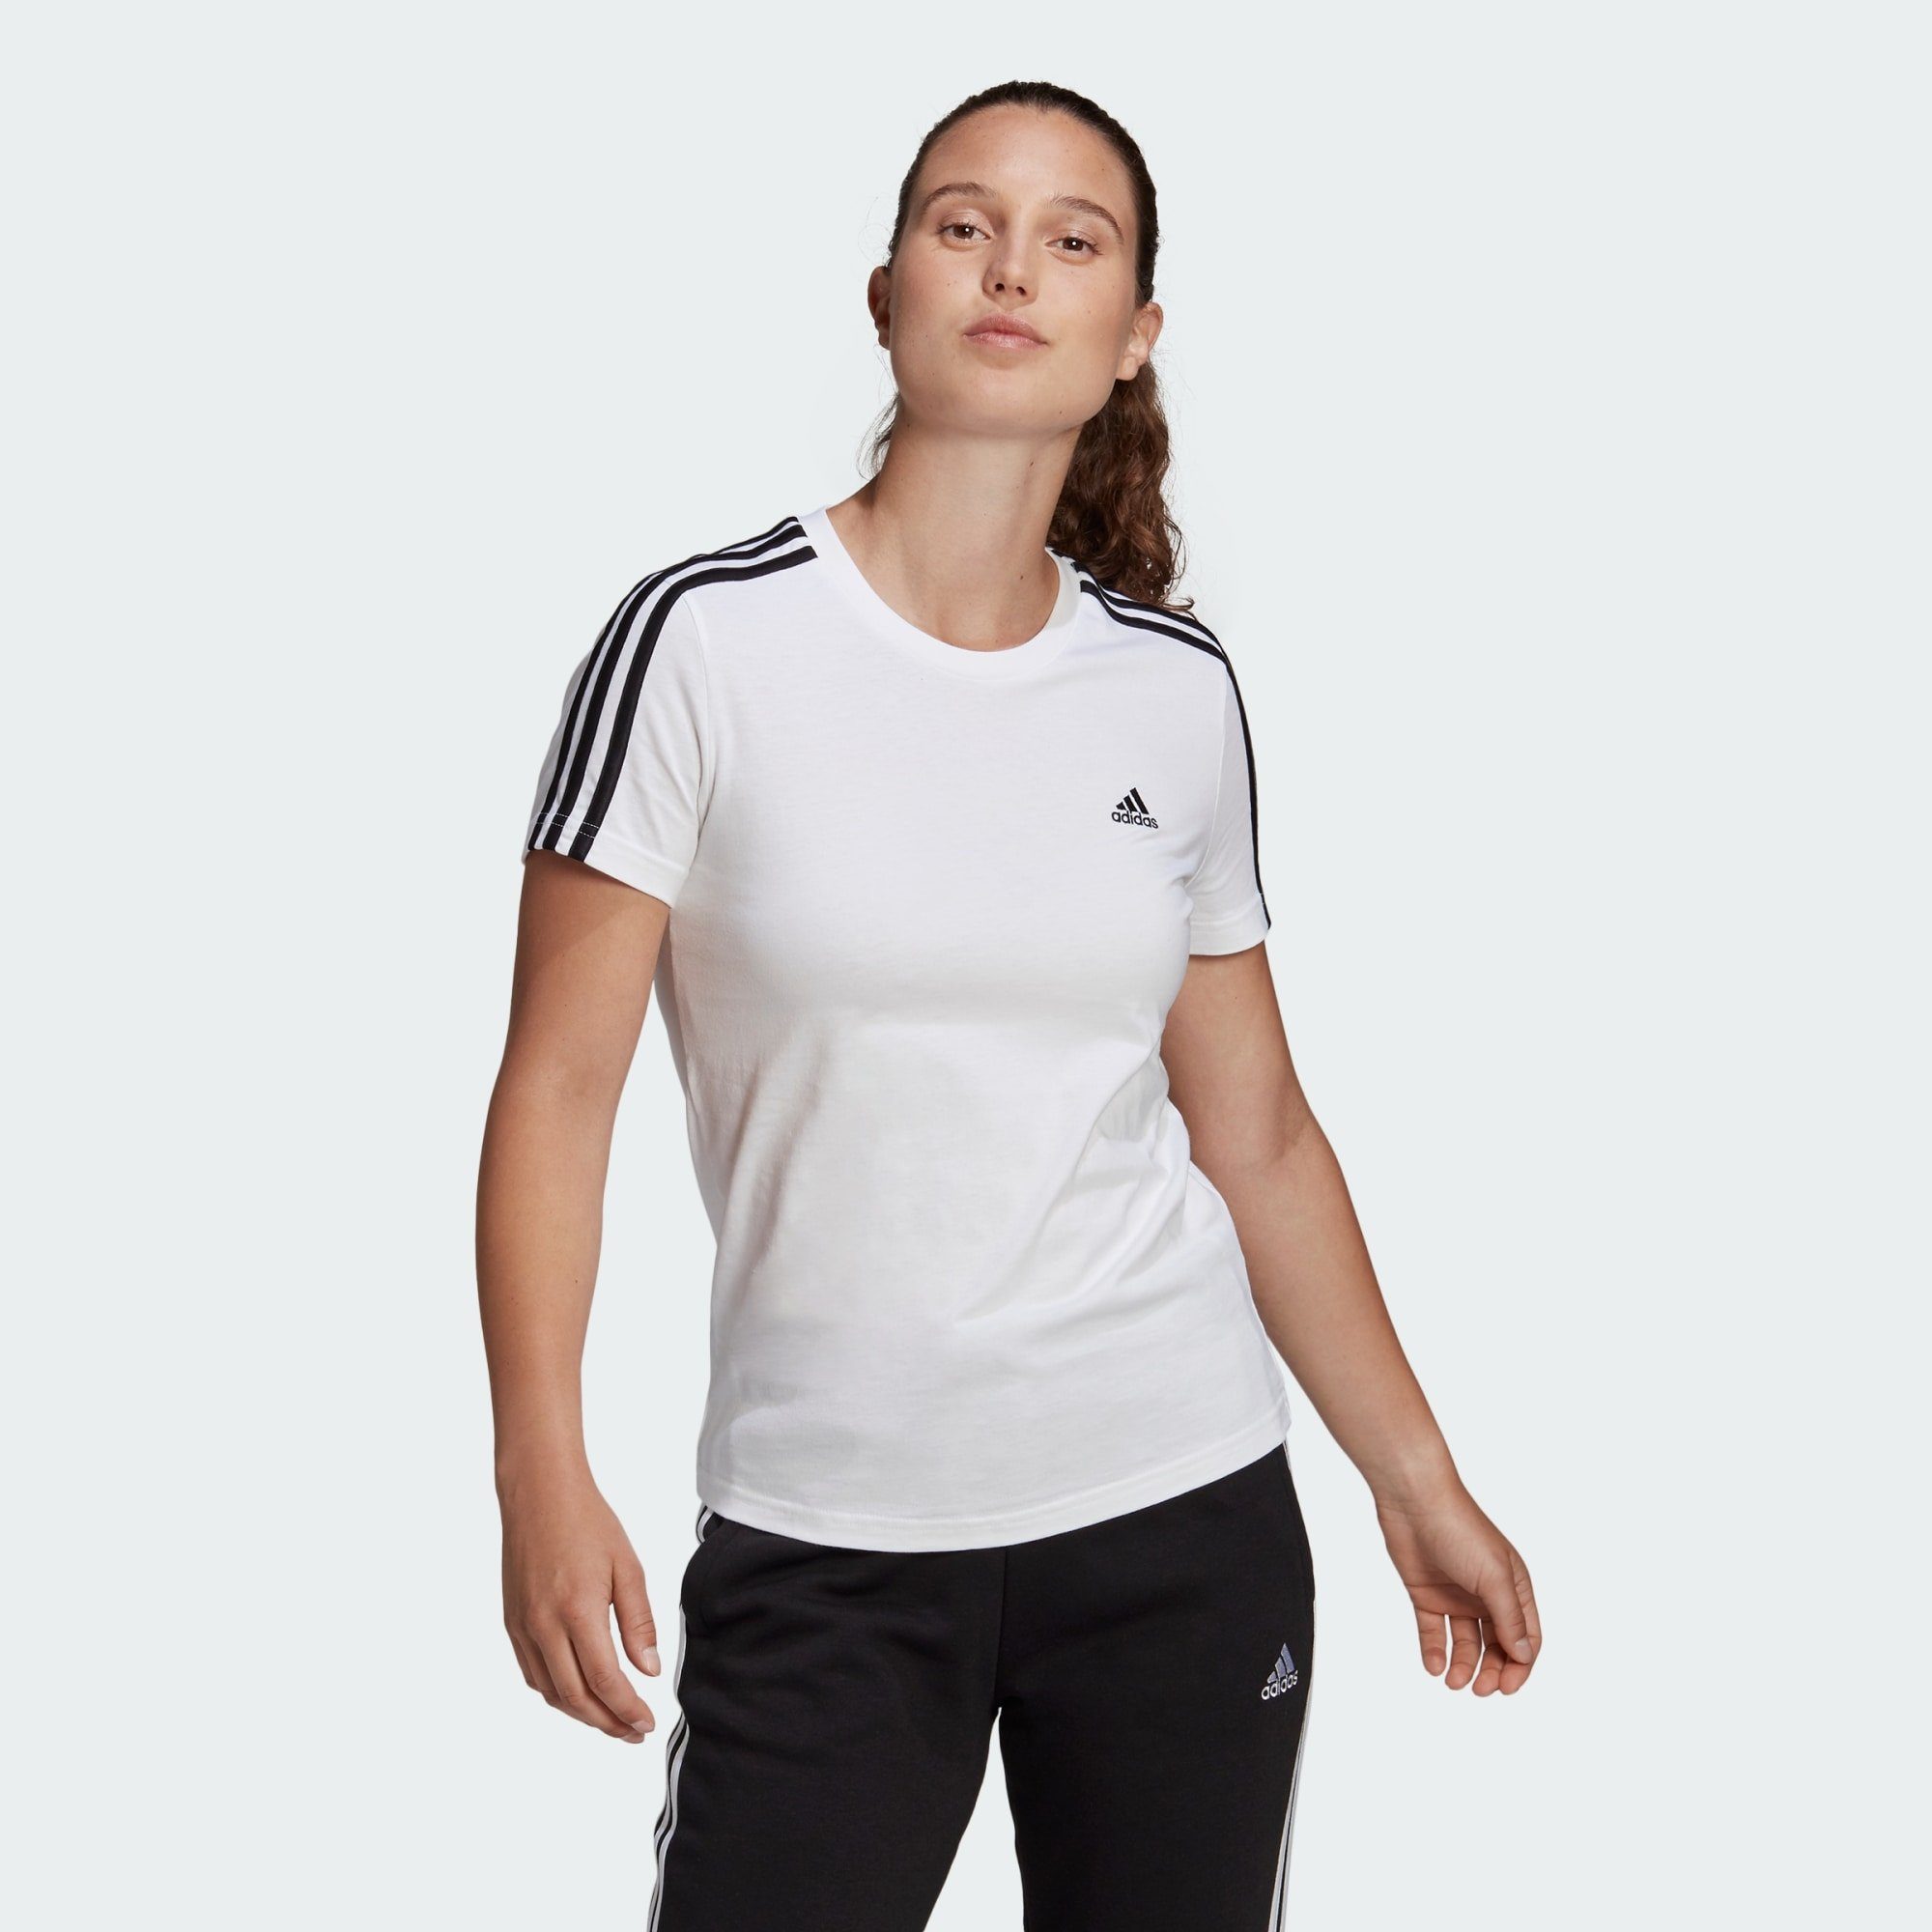 SLIM T-SHIRT / Black T-Shirt ESSENTIALS adidas White LOUNGEWEAR Sportswear 3-STREIFEN